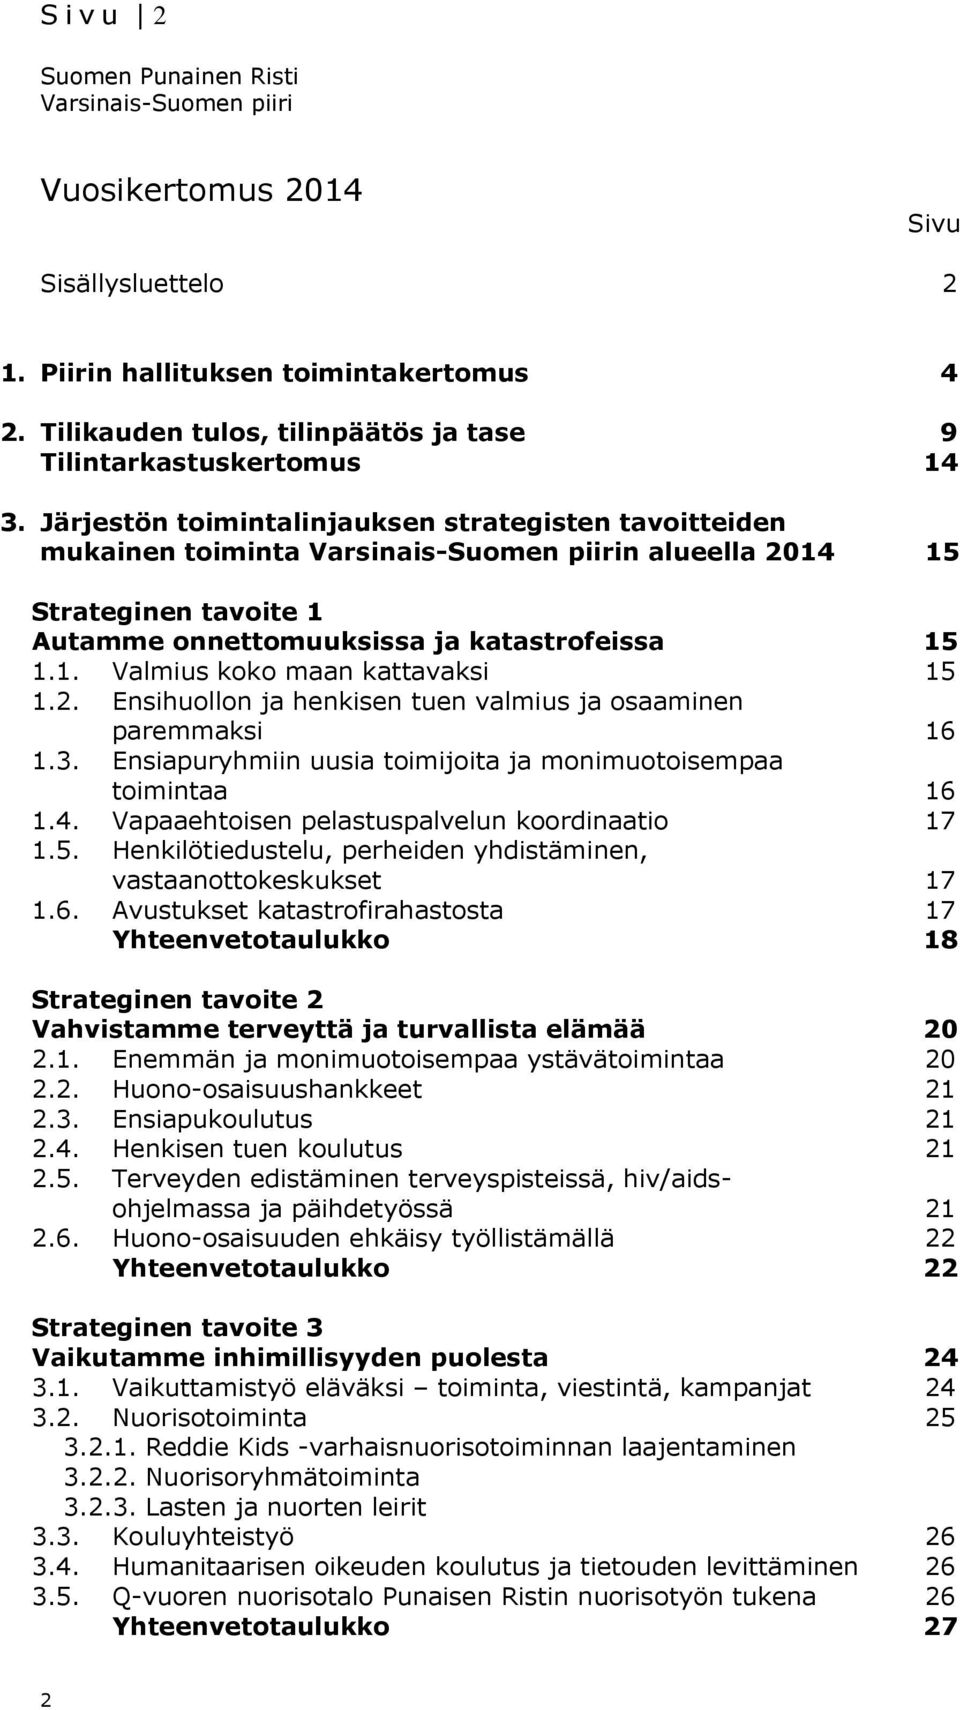 Järjestön toimintalinjauksen strategisten tavoitteiden mukainen toiminta Varsinais-Suomen piirin alueella 15 Strateginen tavoite 1 Autamme onnettomuuksissa ja katastrofeissa 15 1.1. Valmius koko maan kattavaksi 15 1.